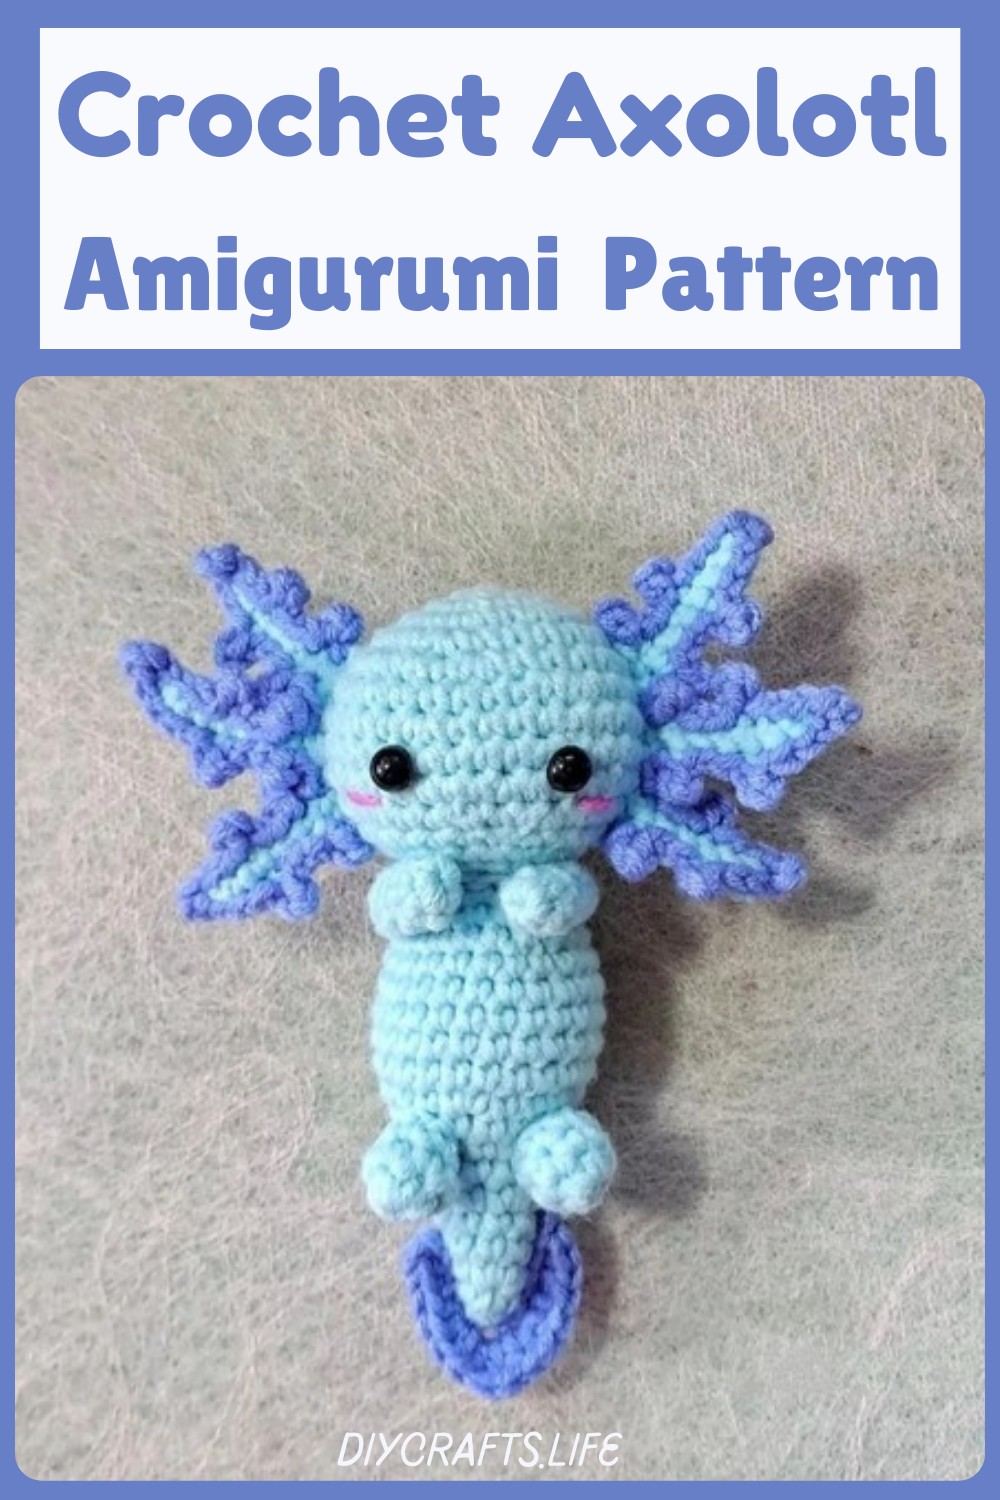 Crochet Little Axolotl Amigurumi Pattern